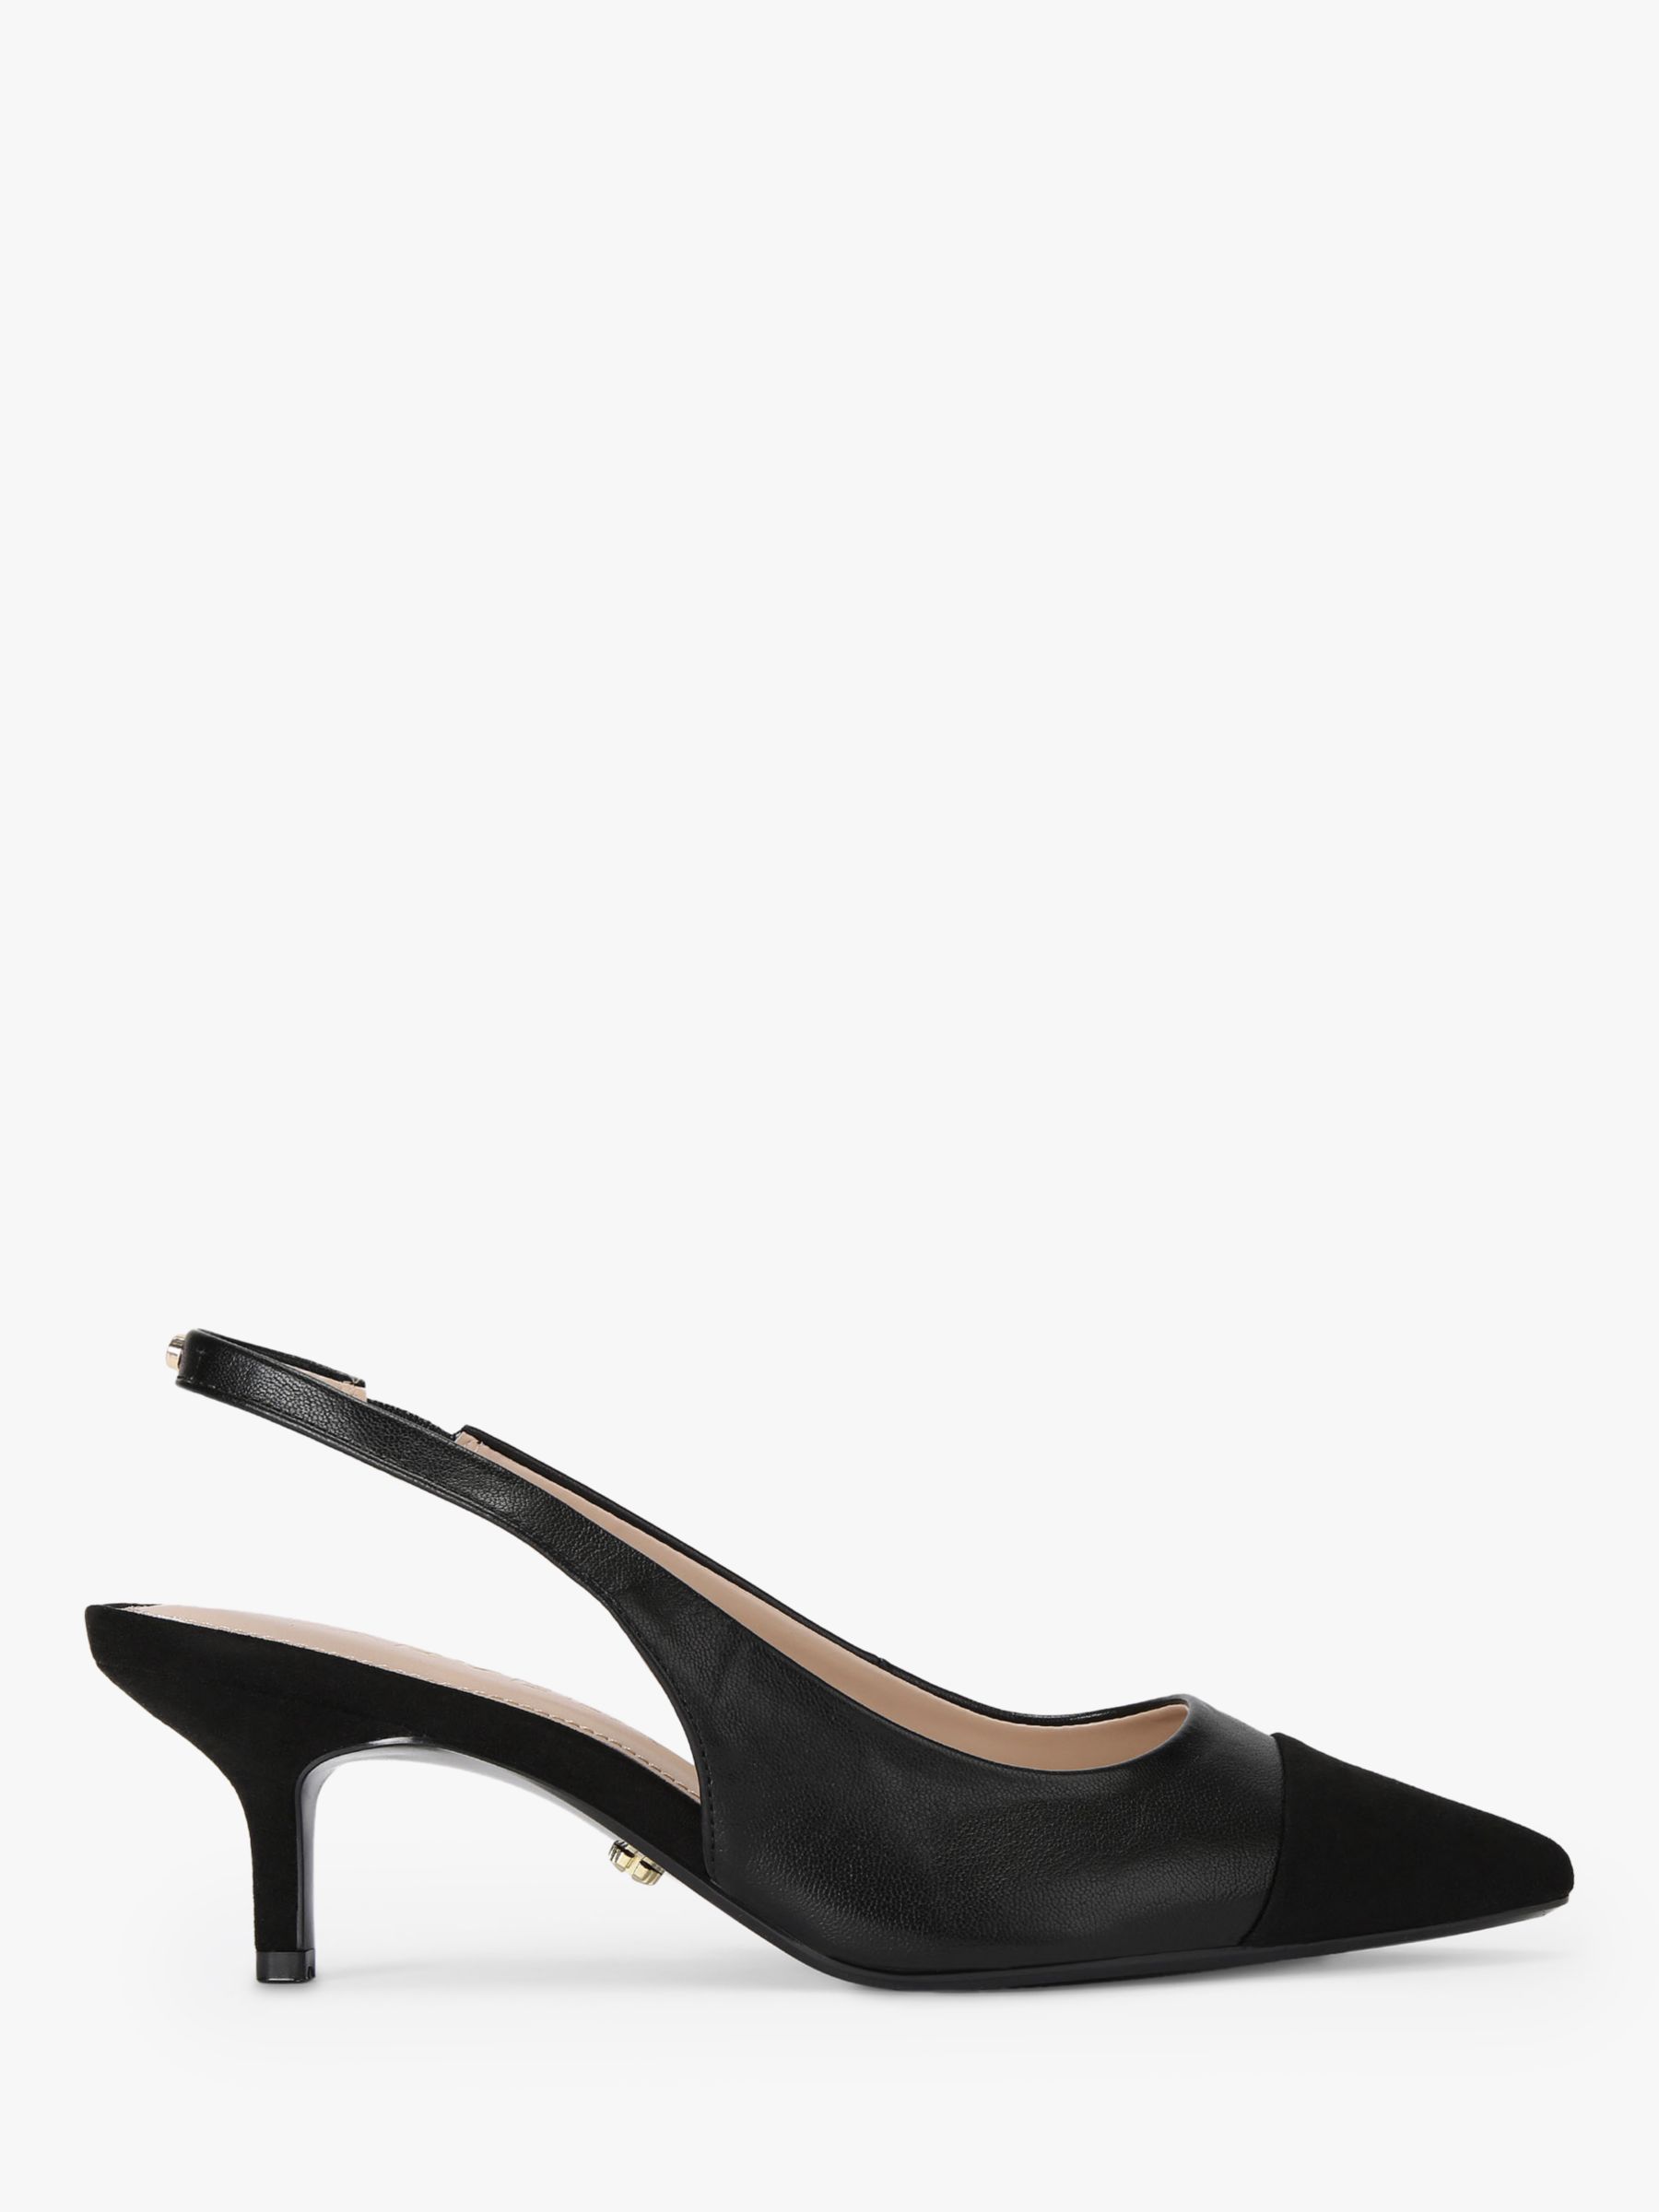 Carvela Clara Slingback Court Shoes, Black, 3